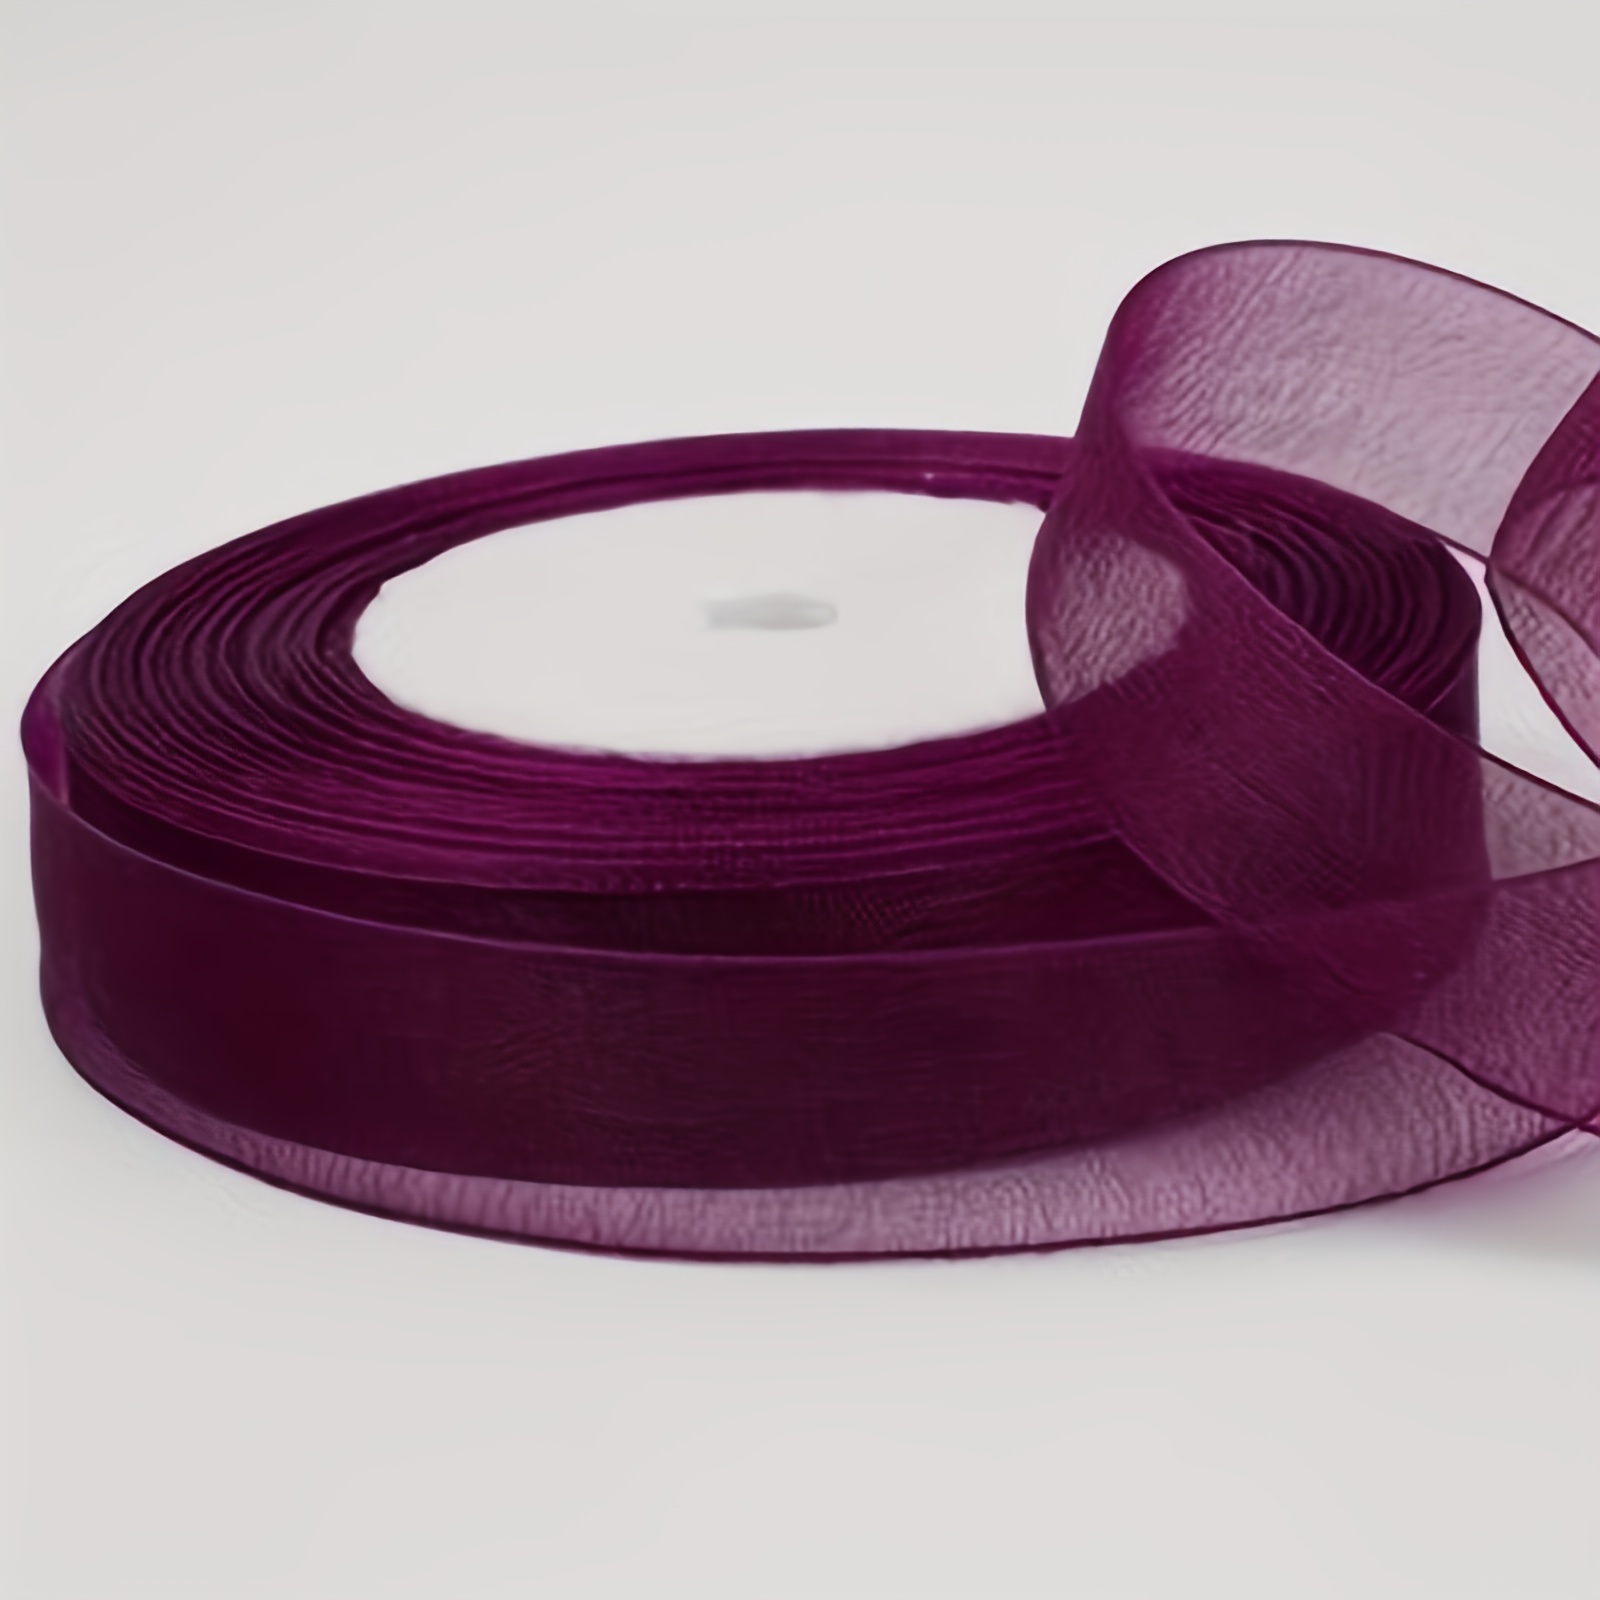 JAM Paper Velvet Ribbon, 1 1/2 Inches x 50 Yards, Burgundy, 1/Pack